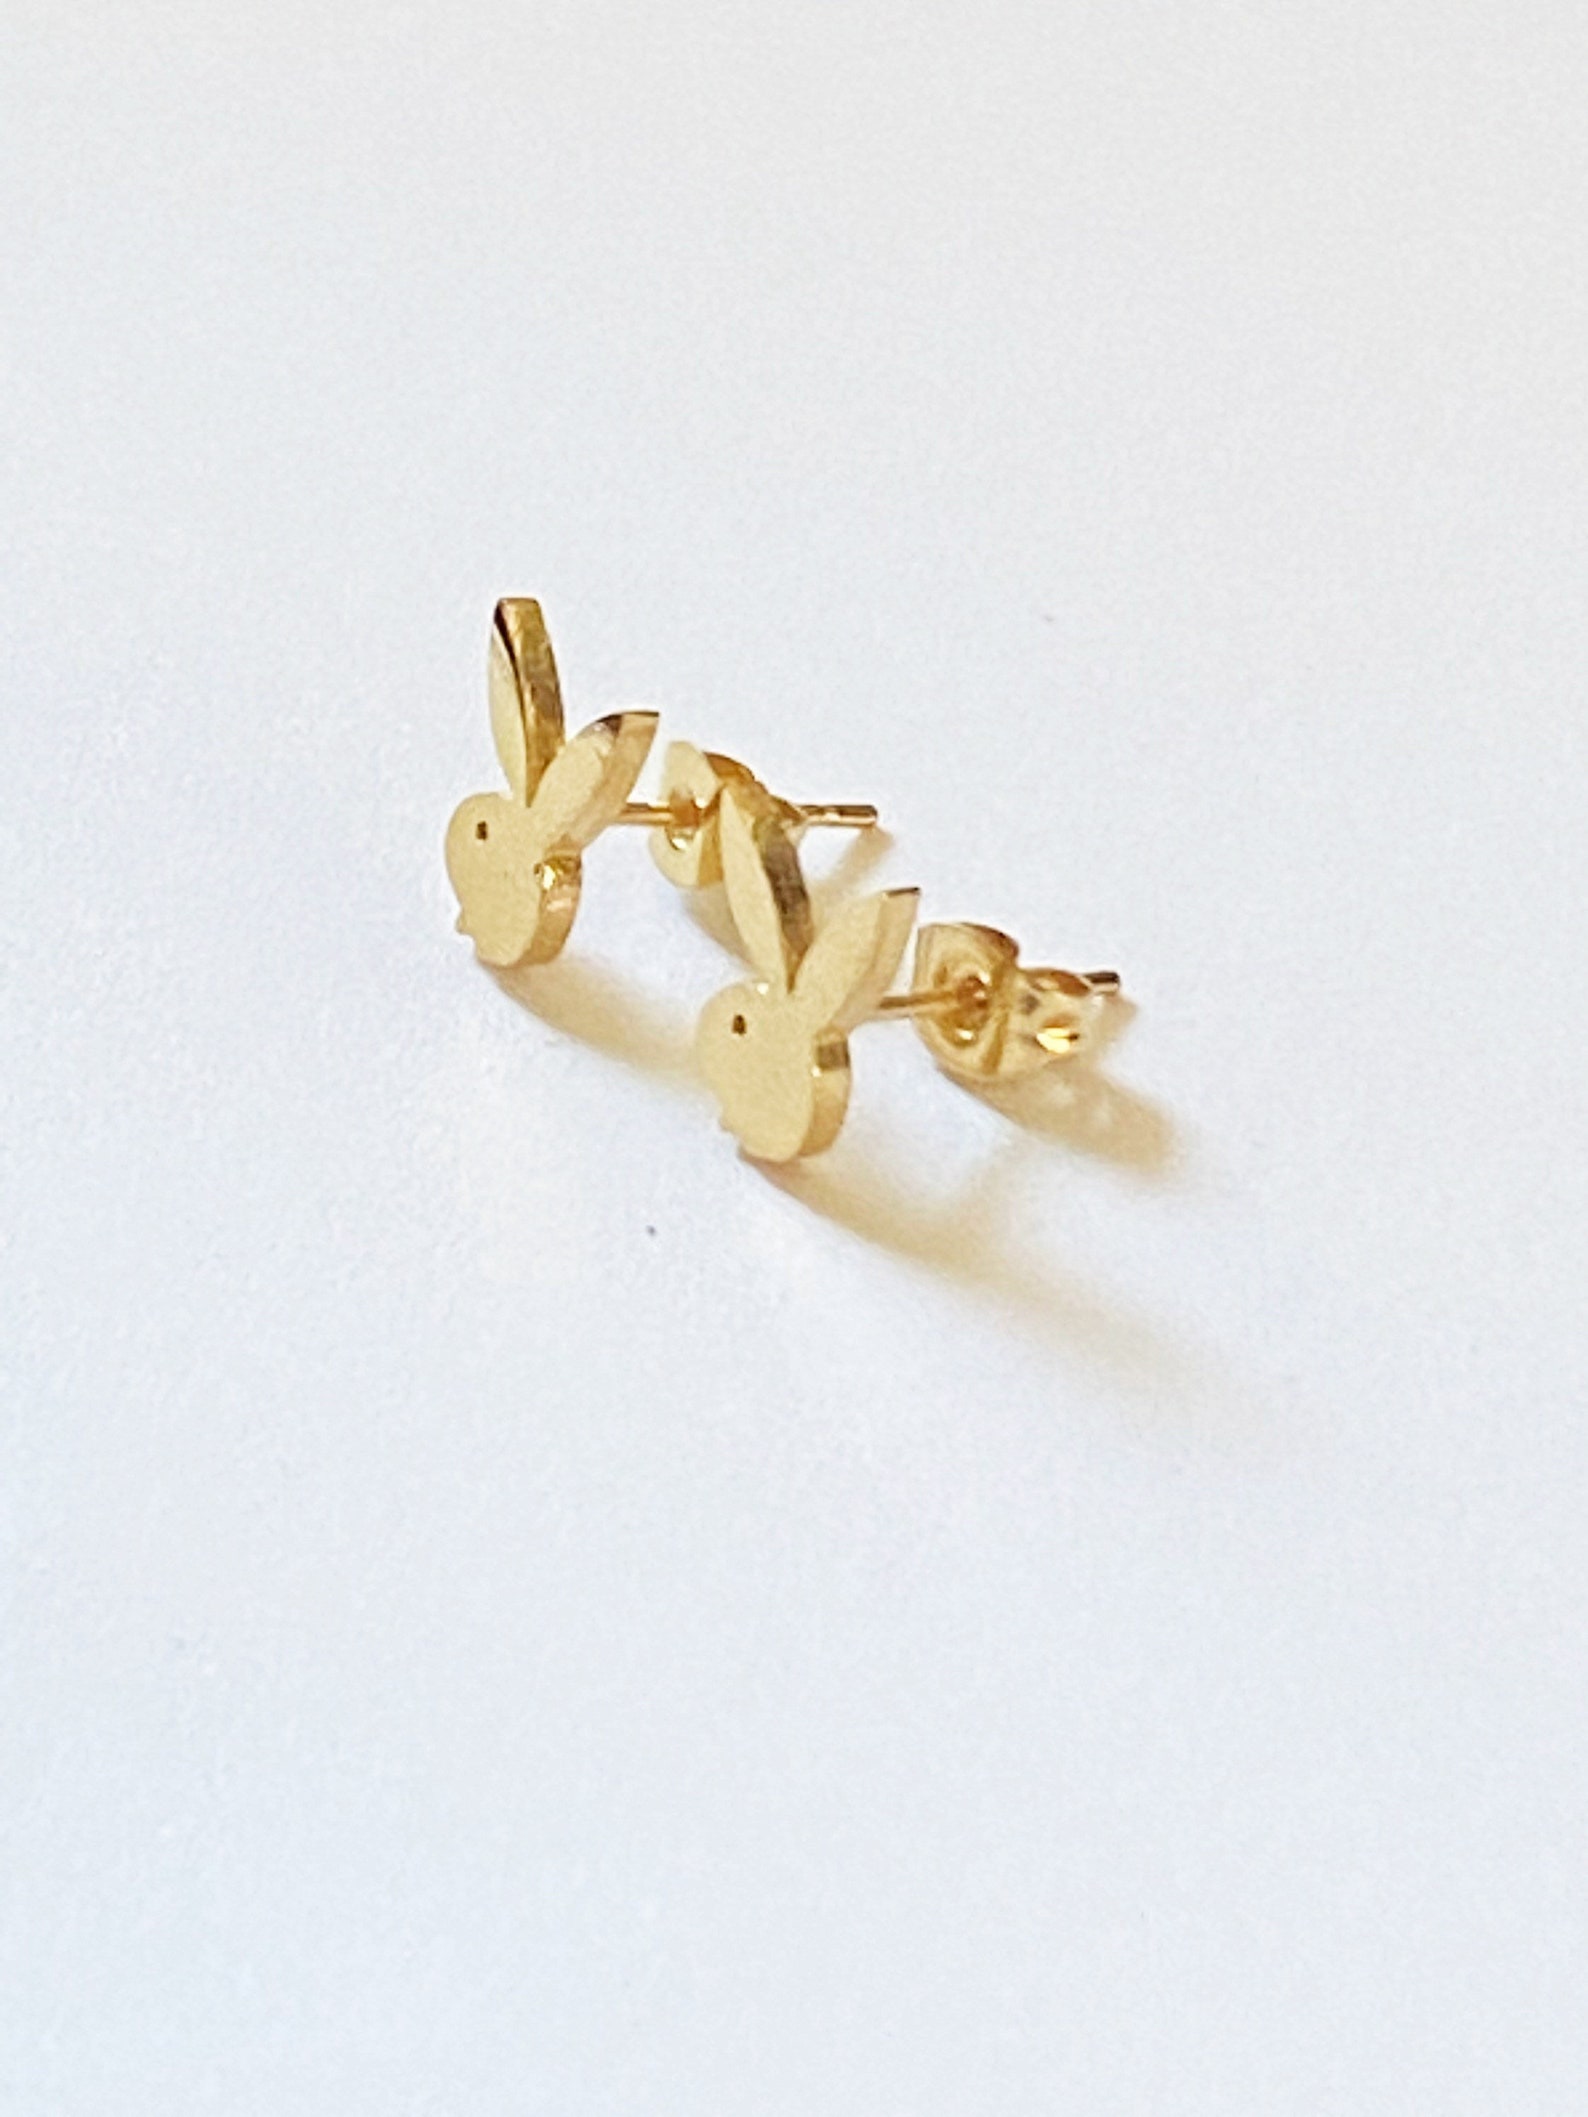 Playboy Bunny Stud Earrings 20g Ear Jewelry Surgical Steel - Etsy